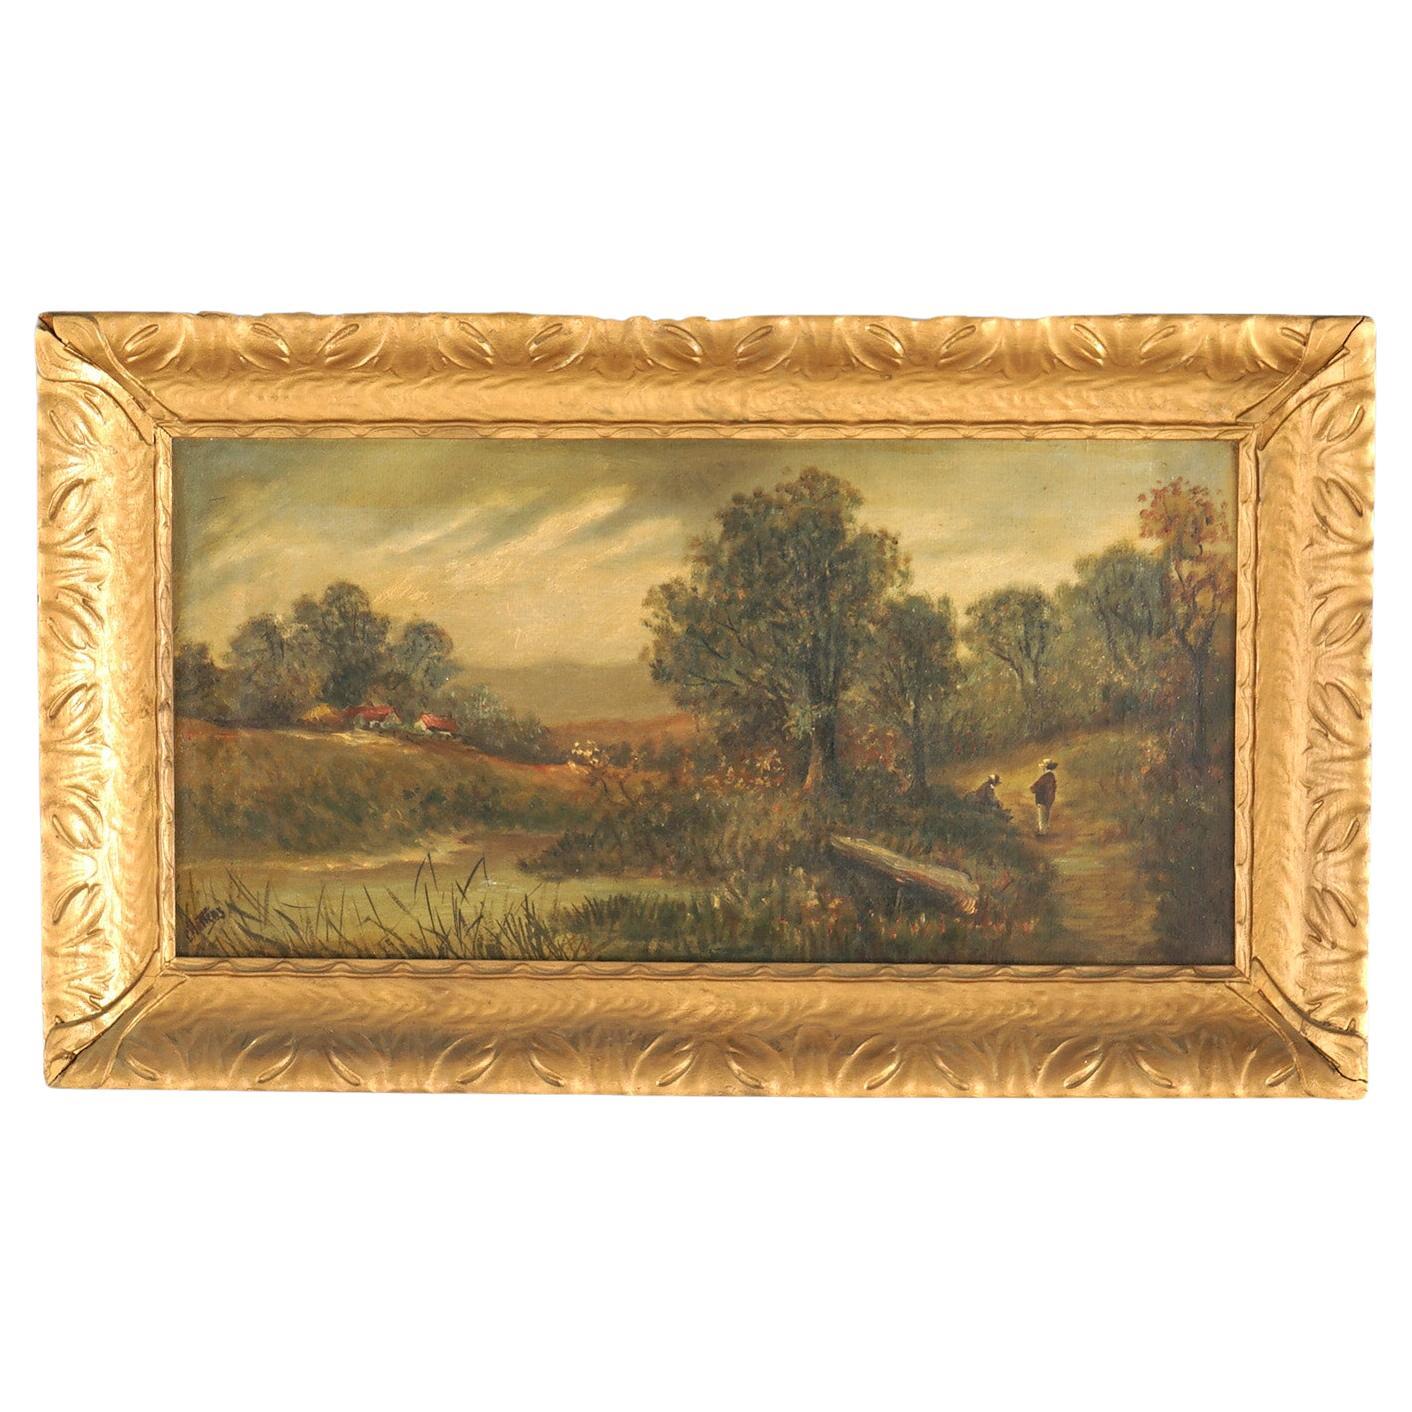 Huile sur toile de Chatten représentant un paysage de village rural, encadrée, vers 1890